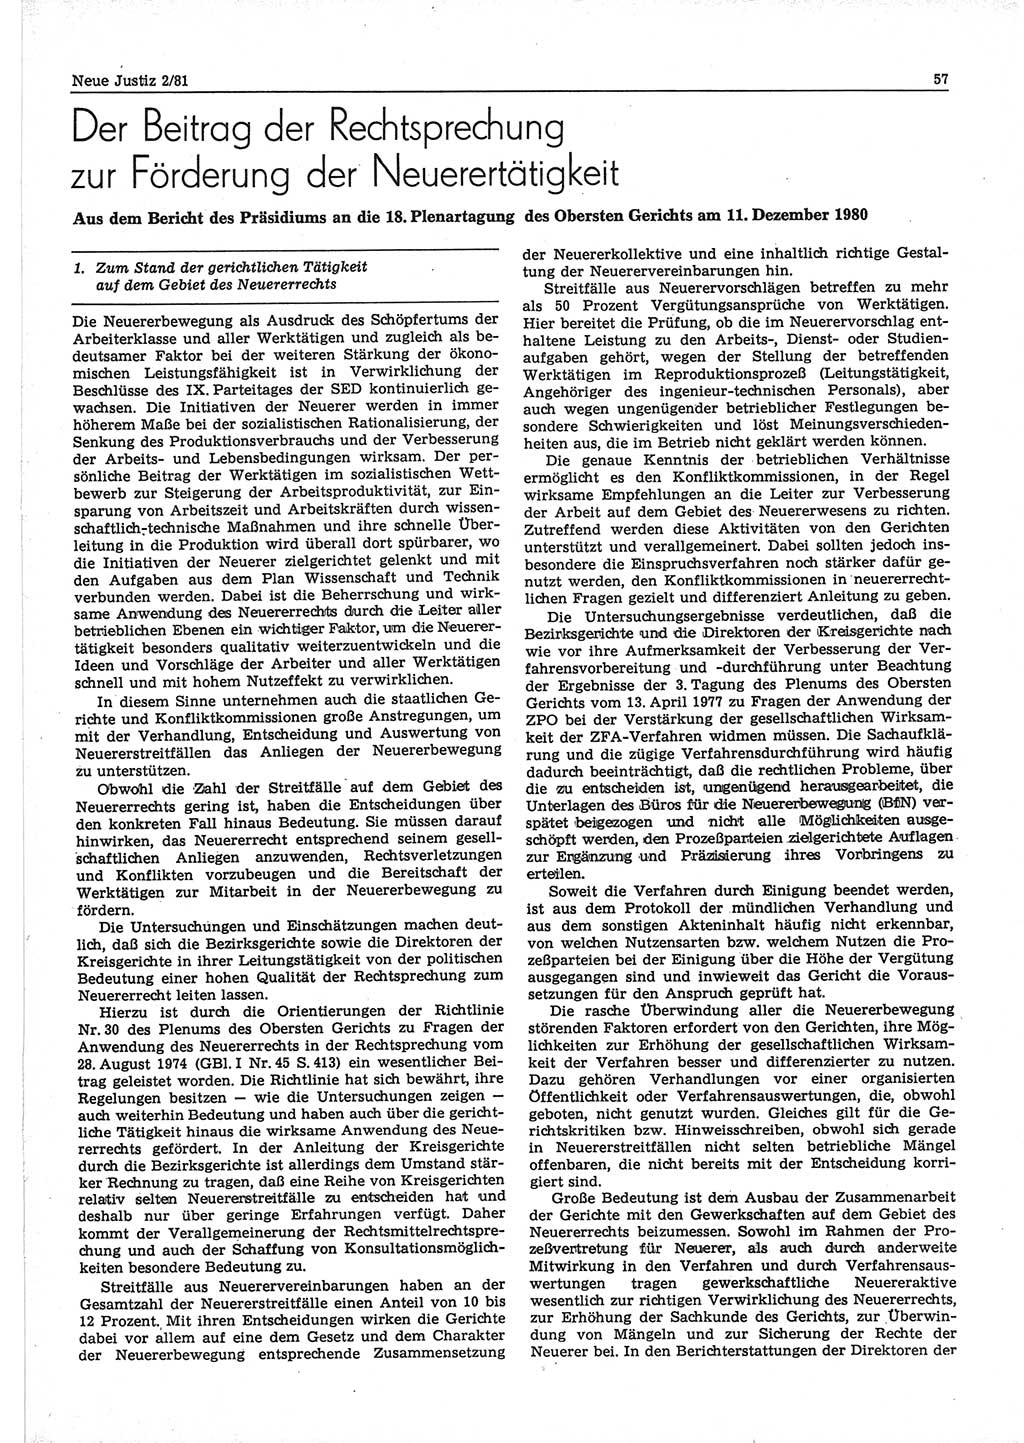 Neue Justiz (NJ), Zeitschrift für sozialistisches Recht und Gesetzlichkeit [Deutsche Demokratische Republik (DDR)], 35. Jahrgang 1981, Seite 57 (NJ DDR 1981, S. 57)